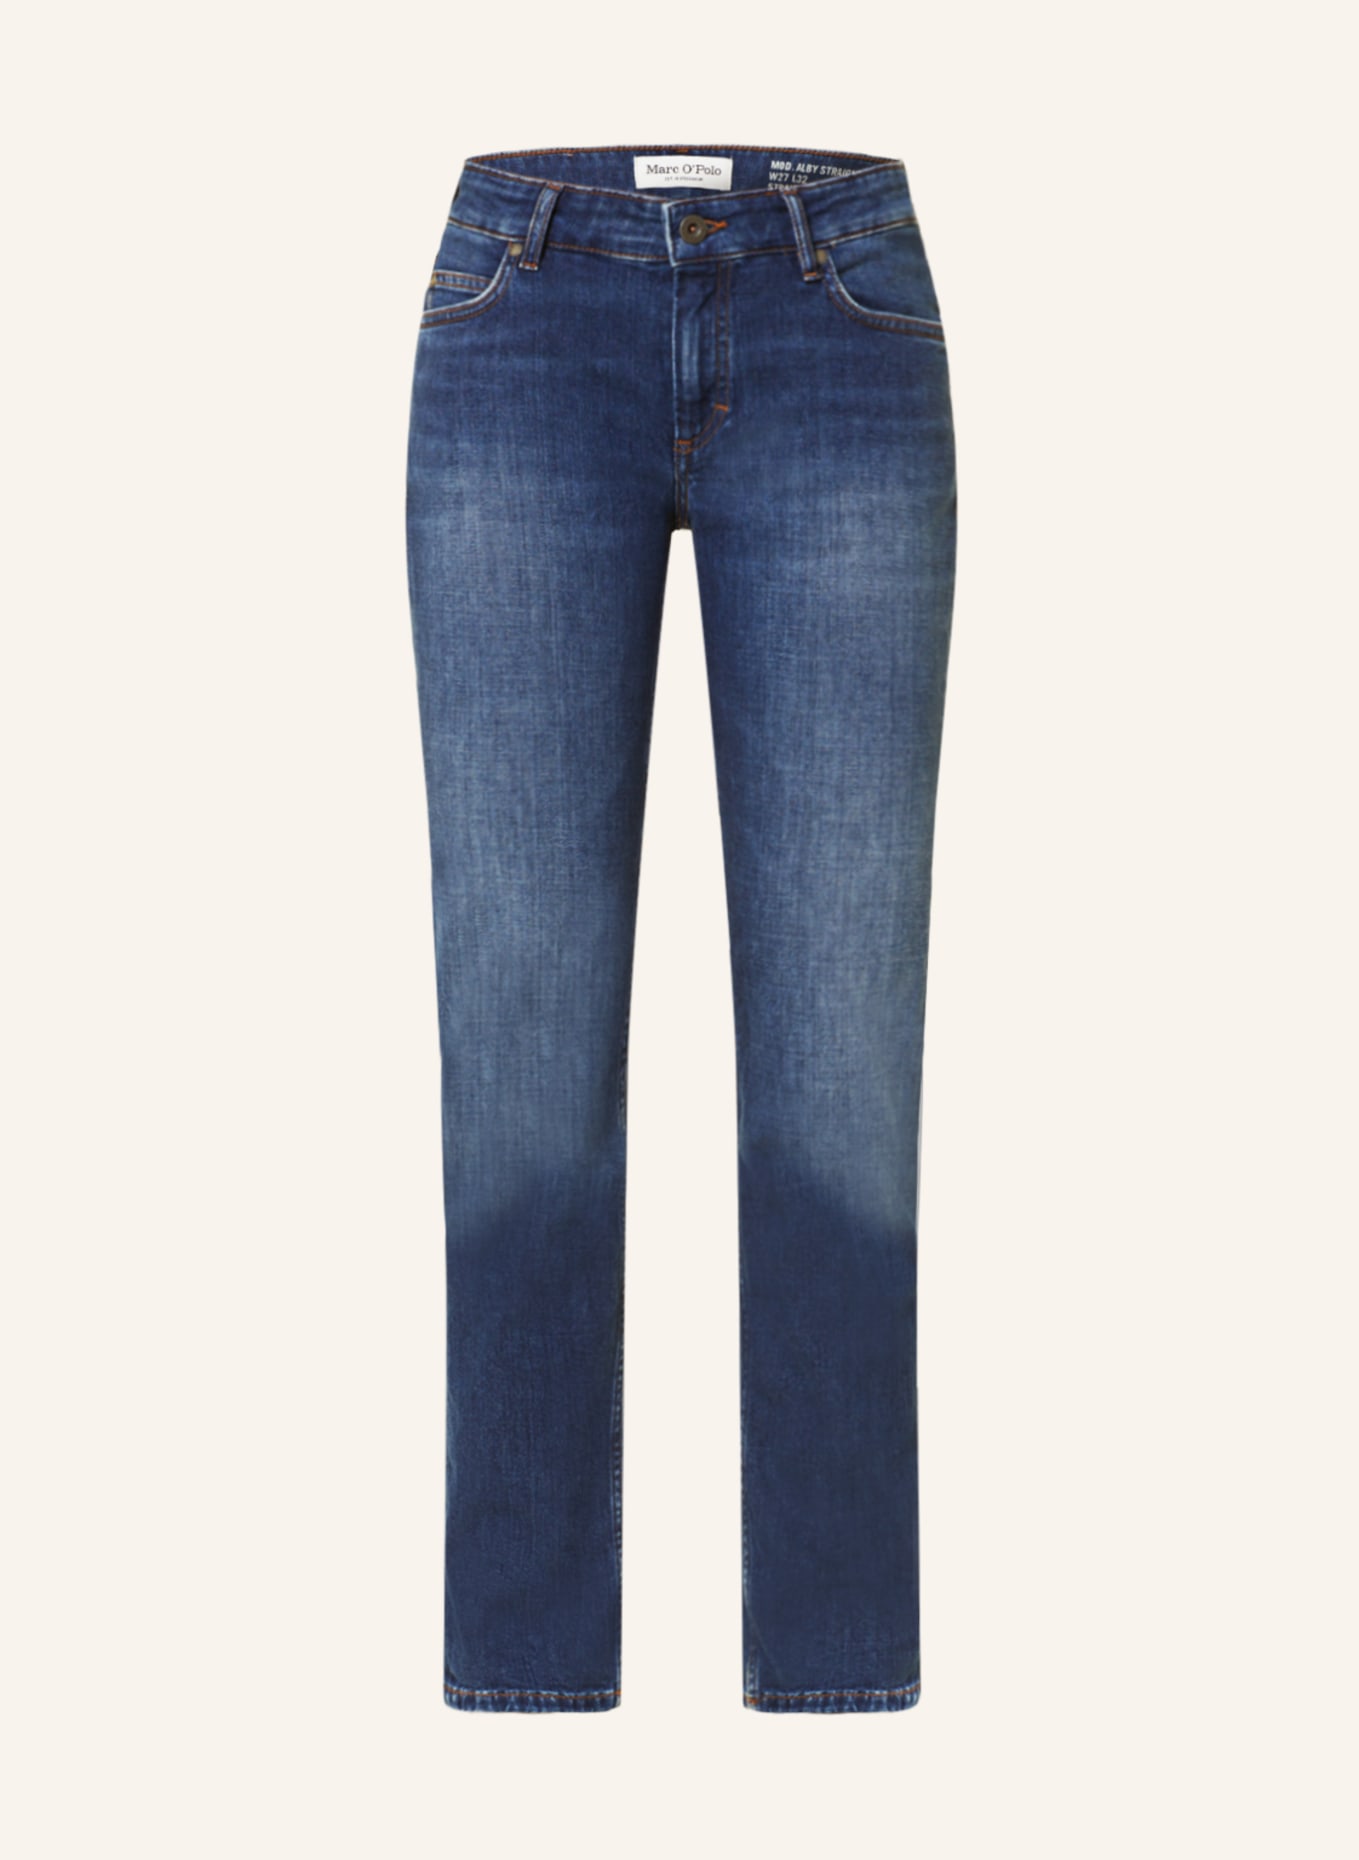 Marc O'Polo Skinny Jeans , Farbe: 053 Cashmere Dark Blue Wash (Bild 1)